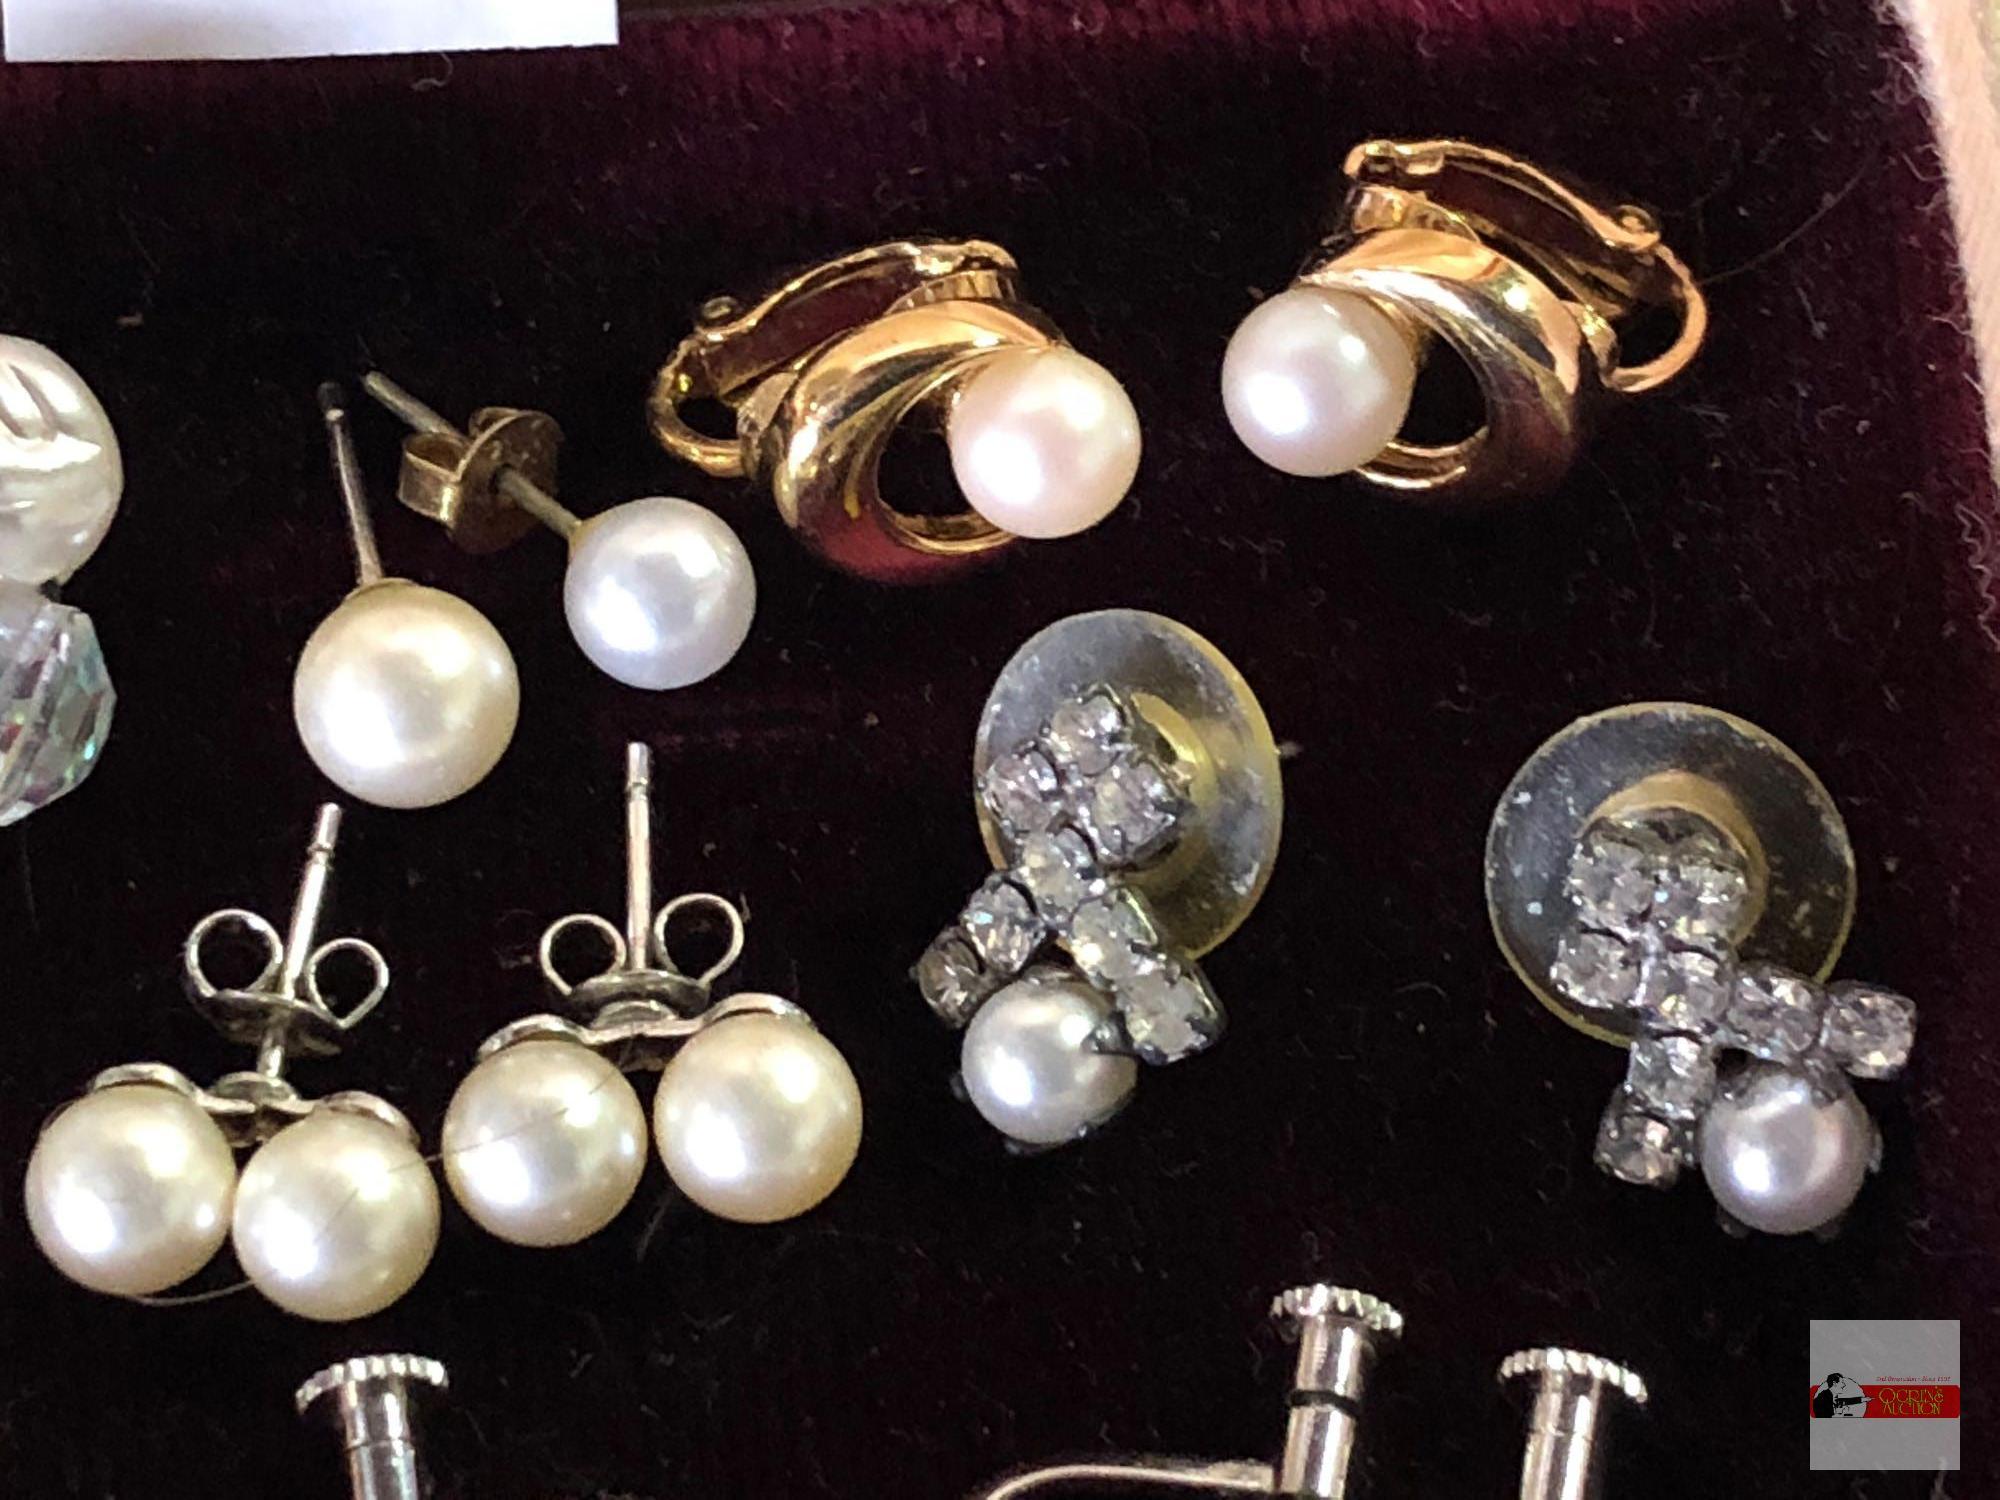 Jewelry - Earrings - 9 pr. misc. pearl earrings, post, screw back, clip-on